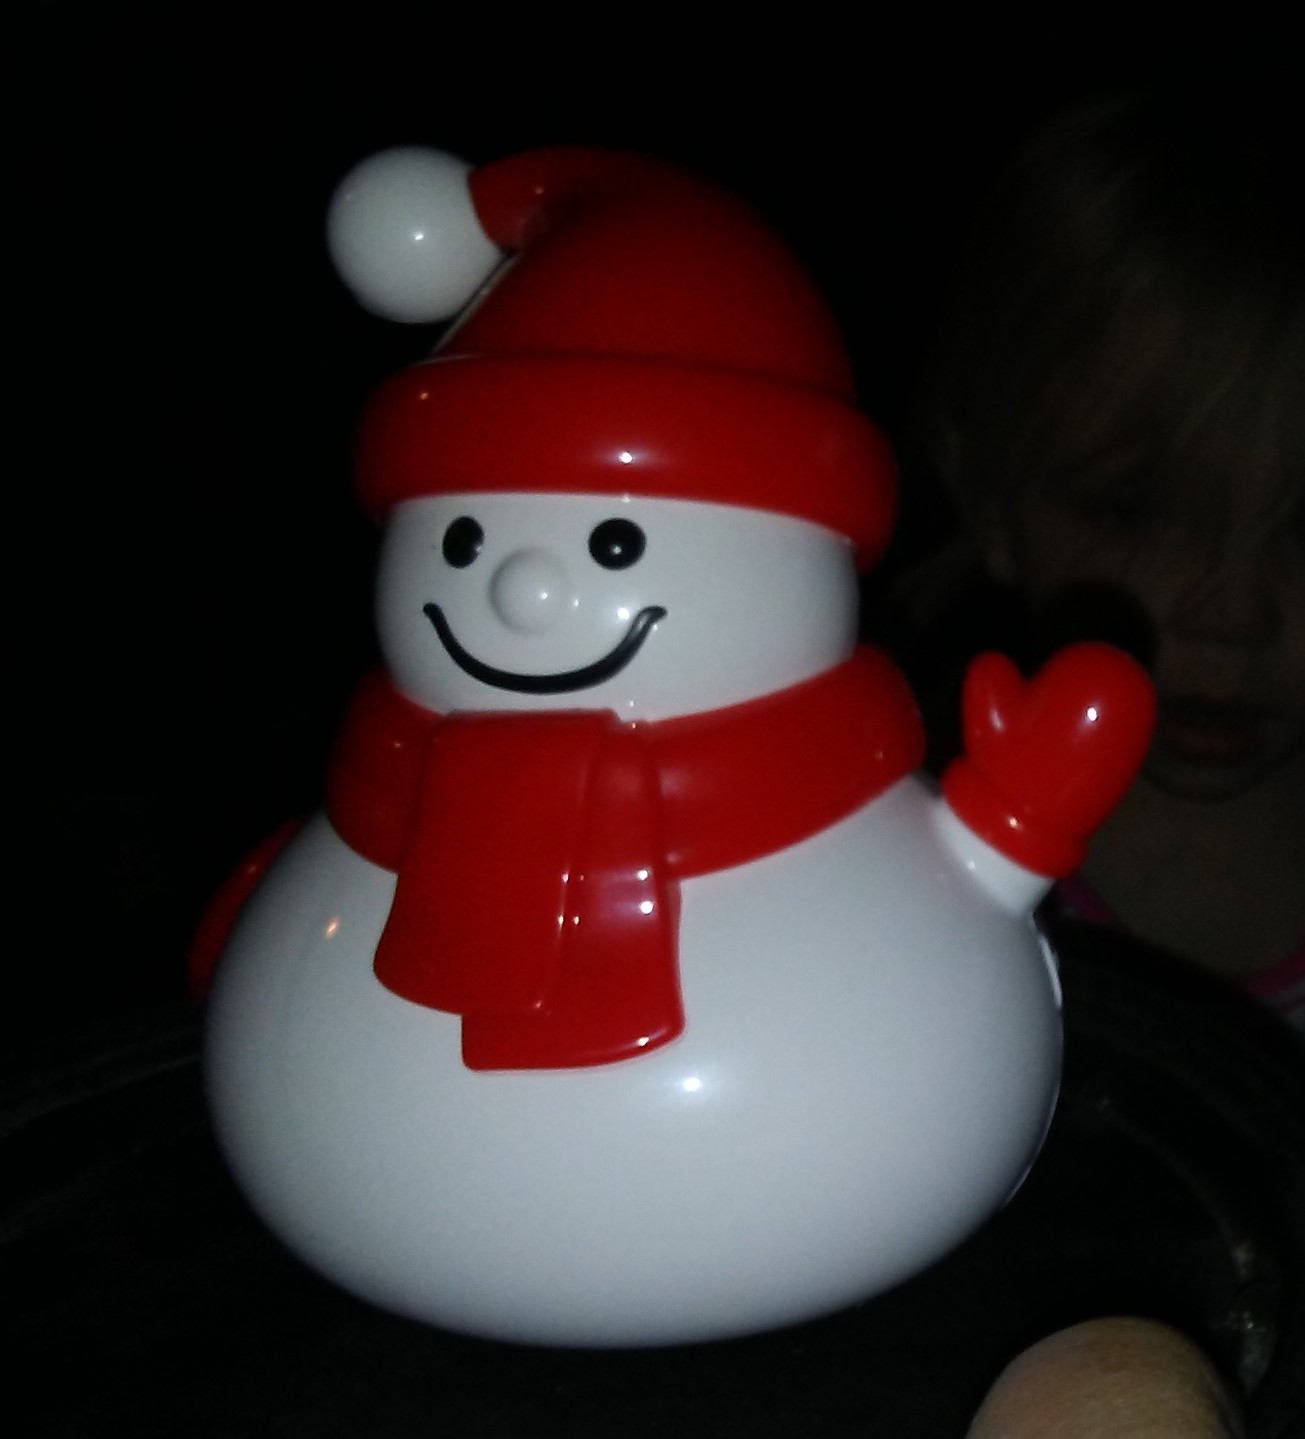 My Granddaughter Loves this Musical Snowman Speaker!